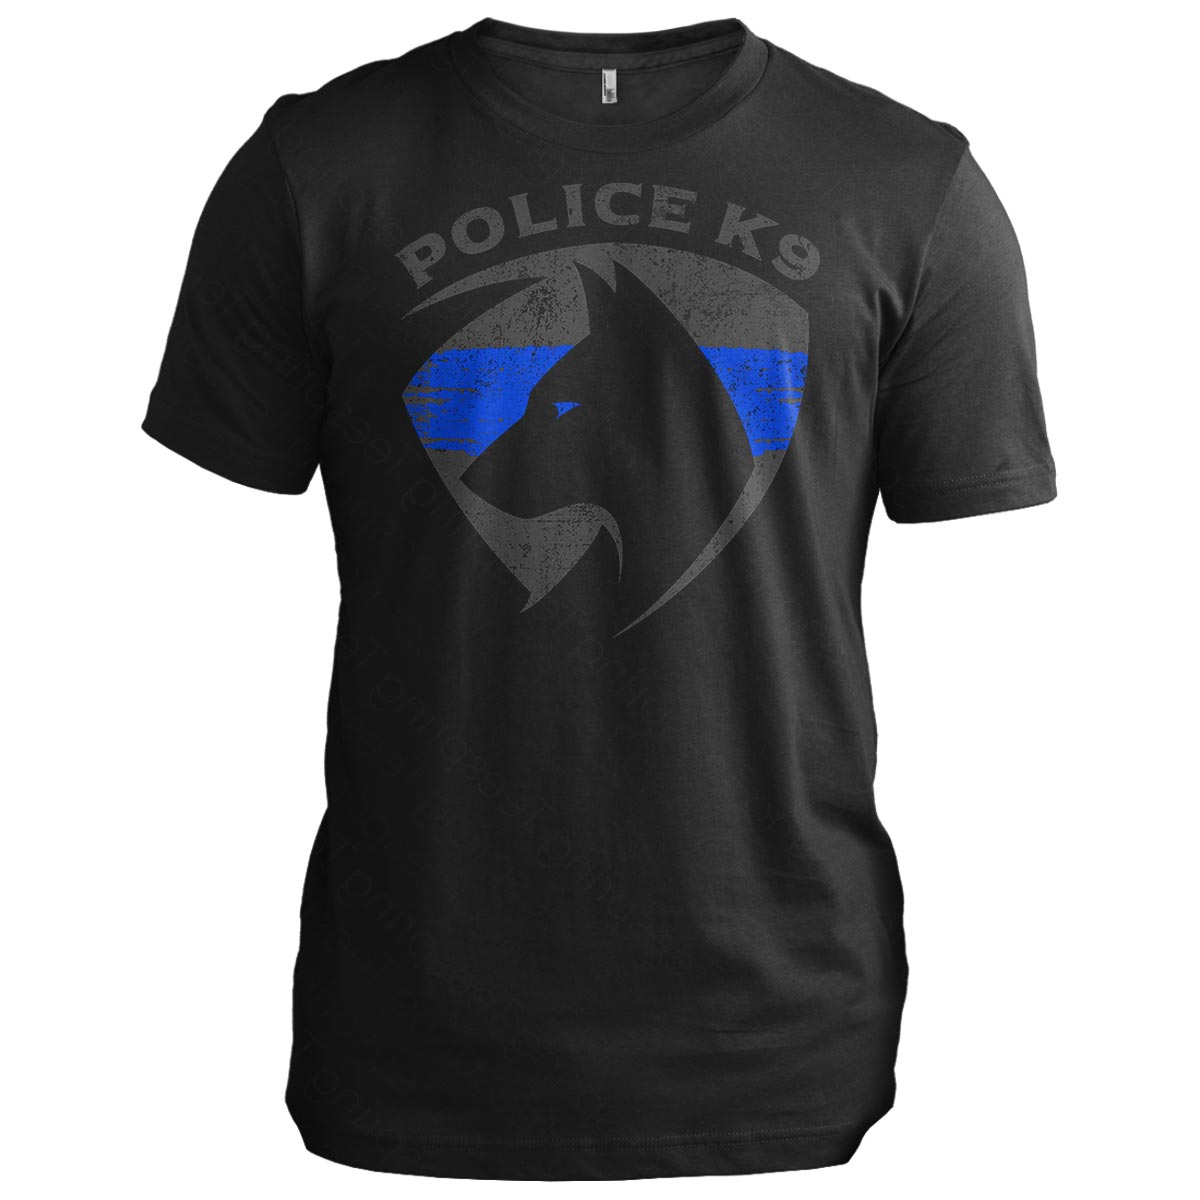 Police K9